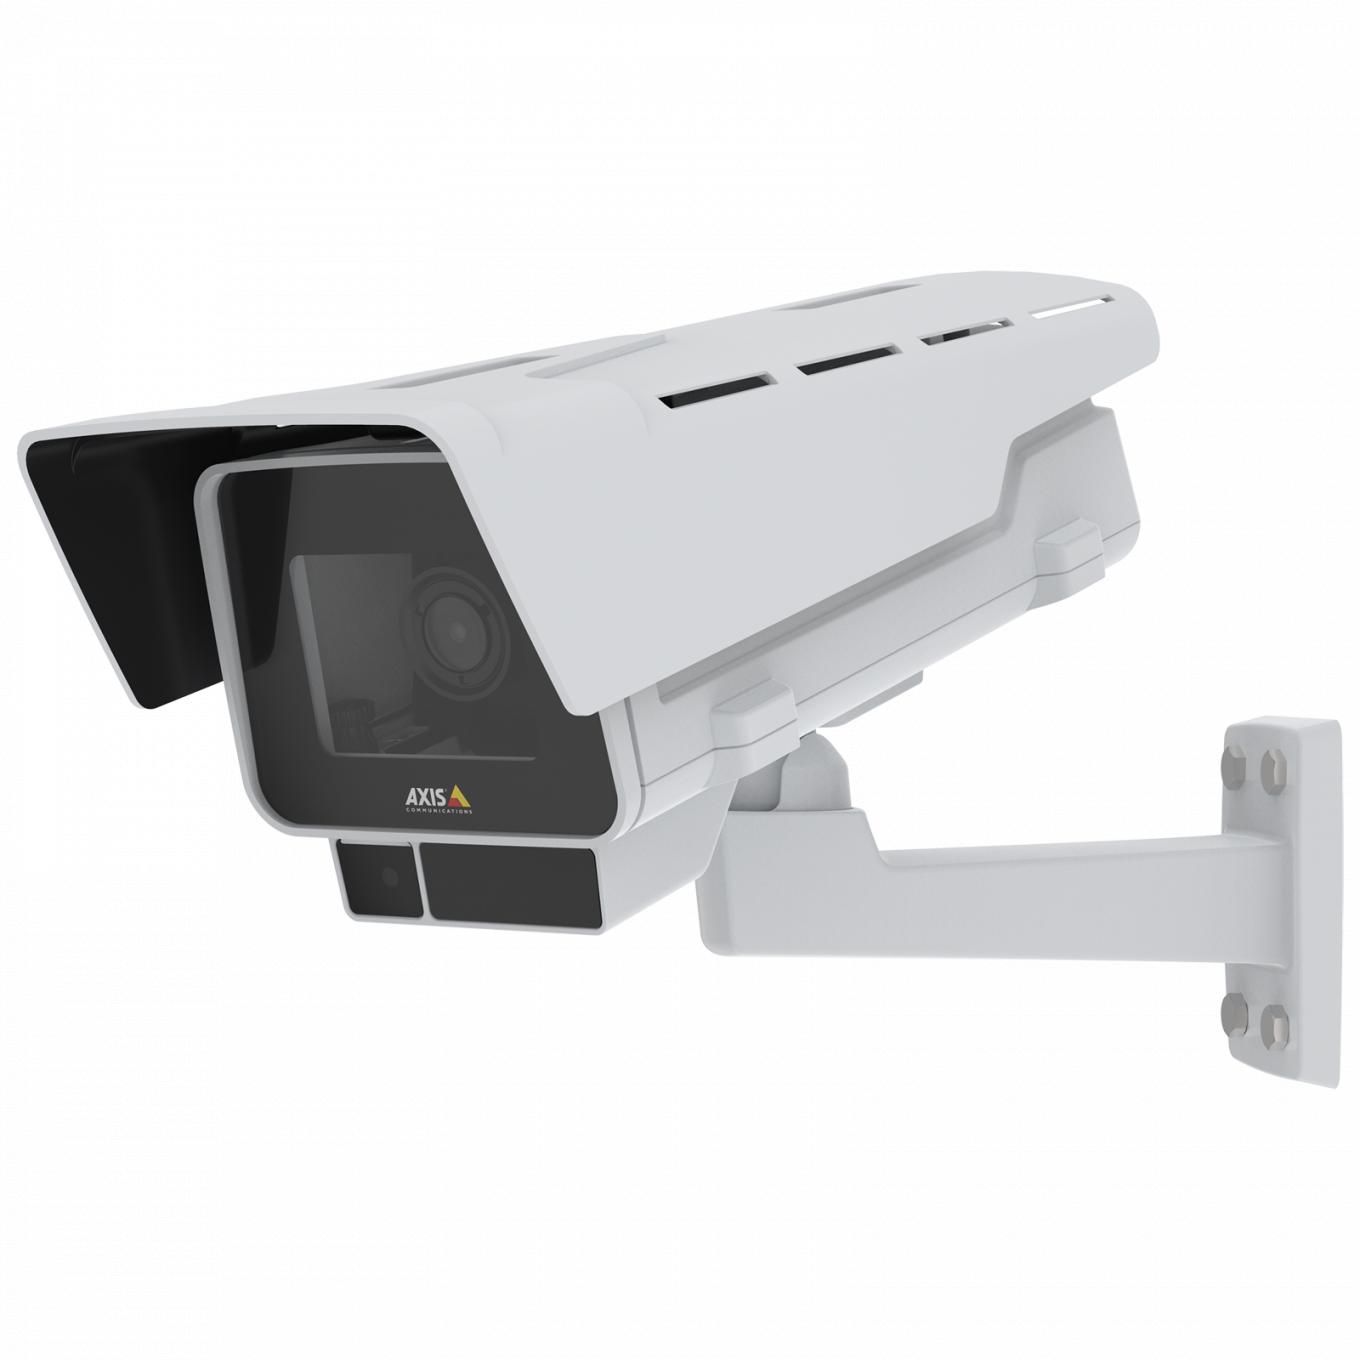 La caméra IP AXIS P1377-LE dispose des fonctions OptimizedIR et Forensic WDR. Le produit est vu depuis son angle gauche.